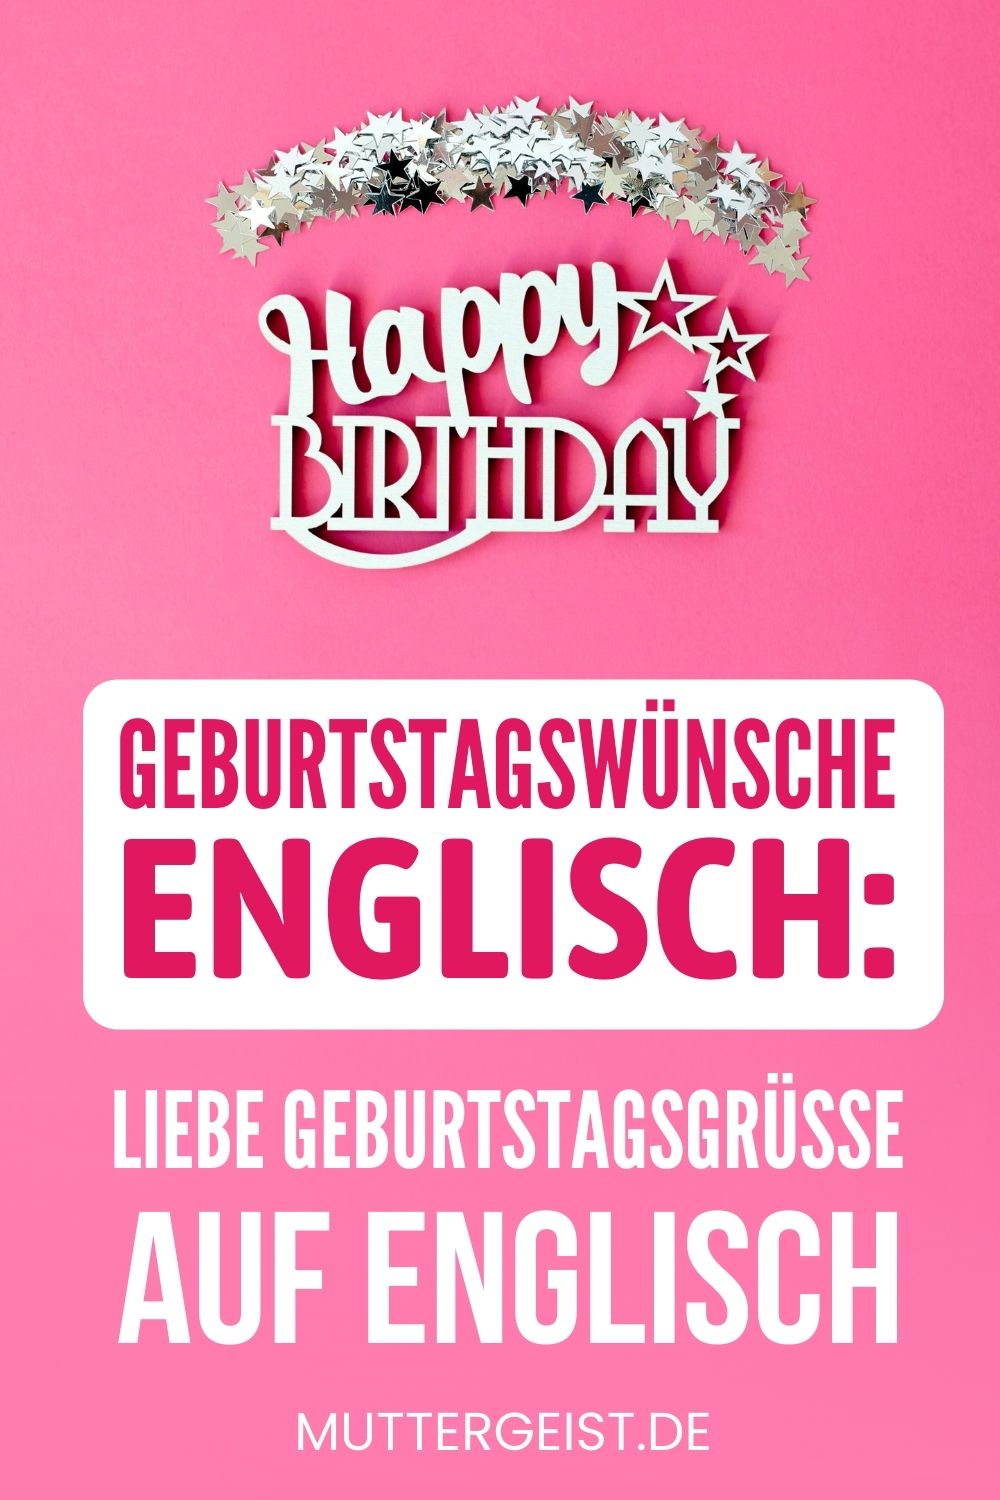 Geburtstagswünsche Englisch – Liebe Geburtstagsgrüße auf Englisch Pinterest